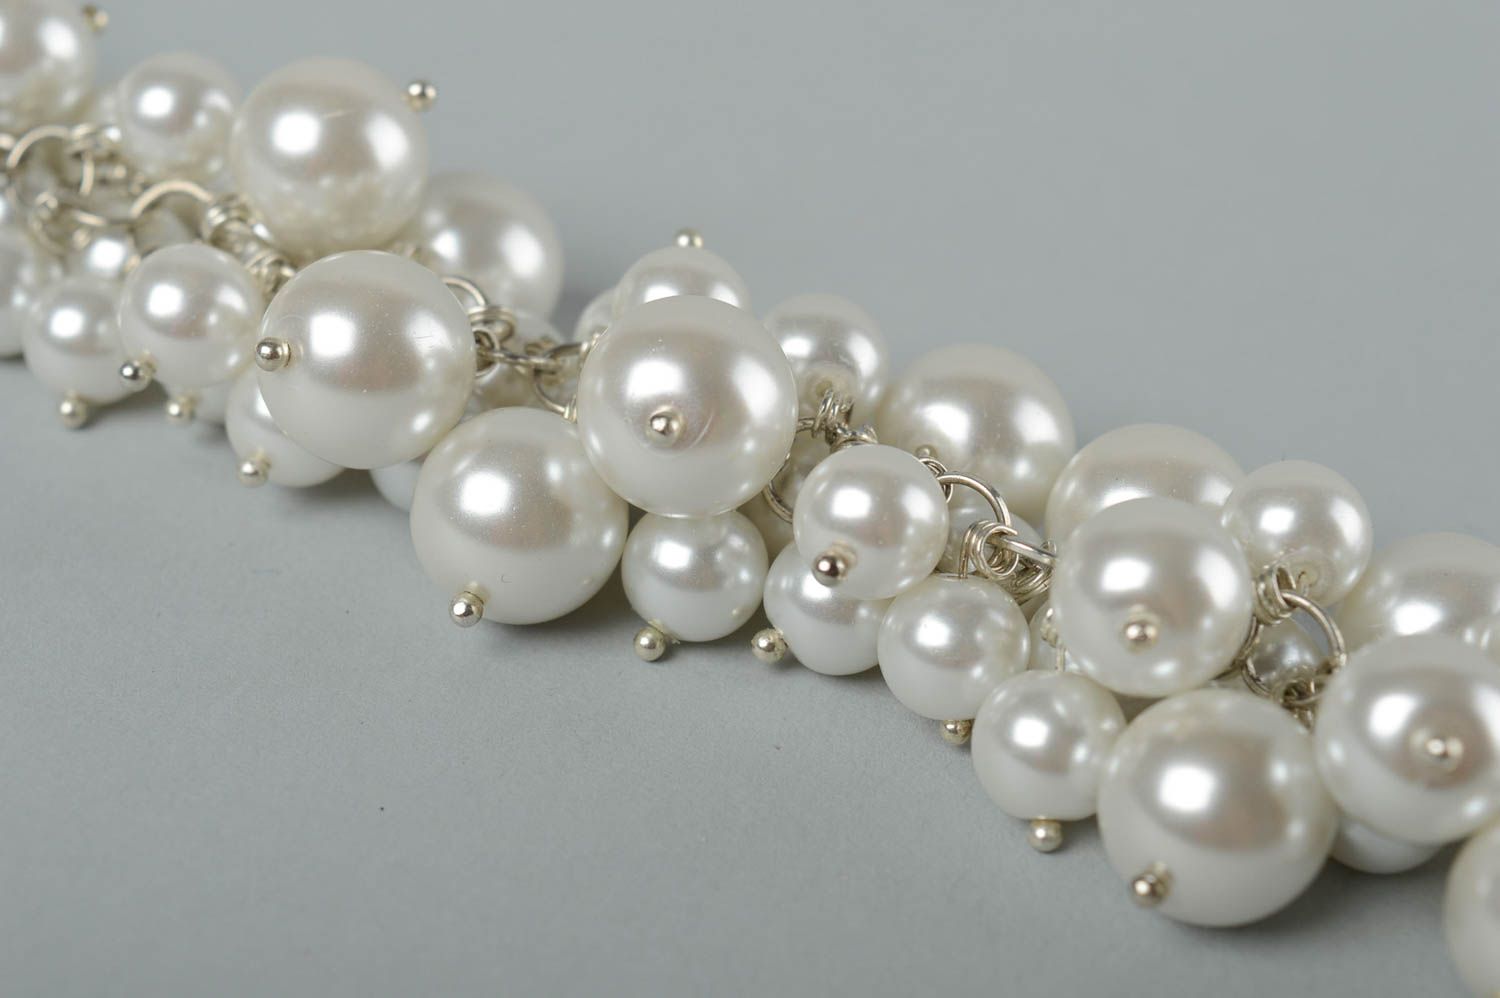 Handmade white beads chain bracelet for women photo 4